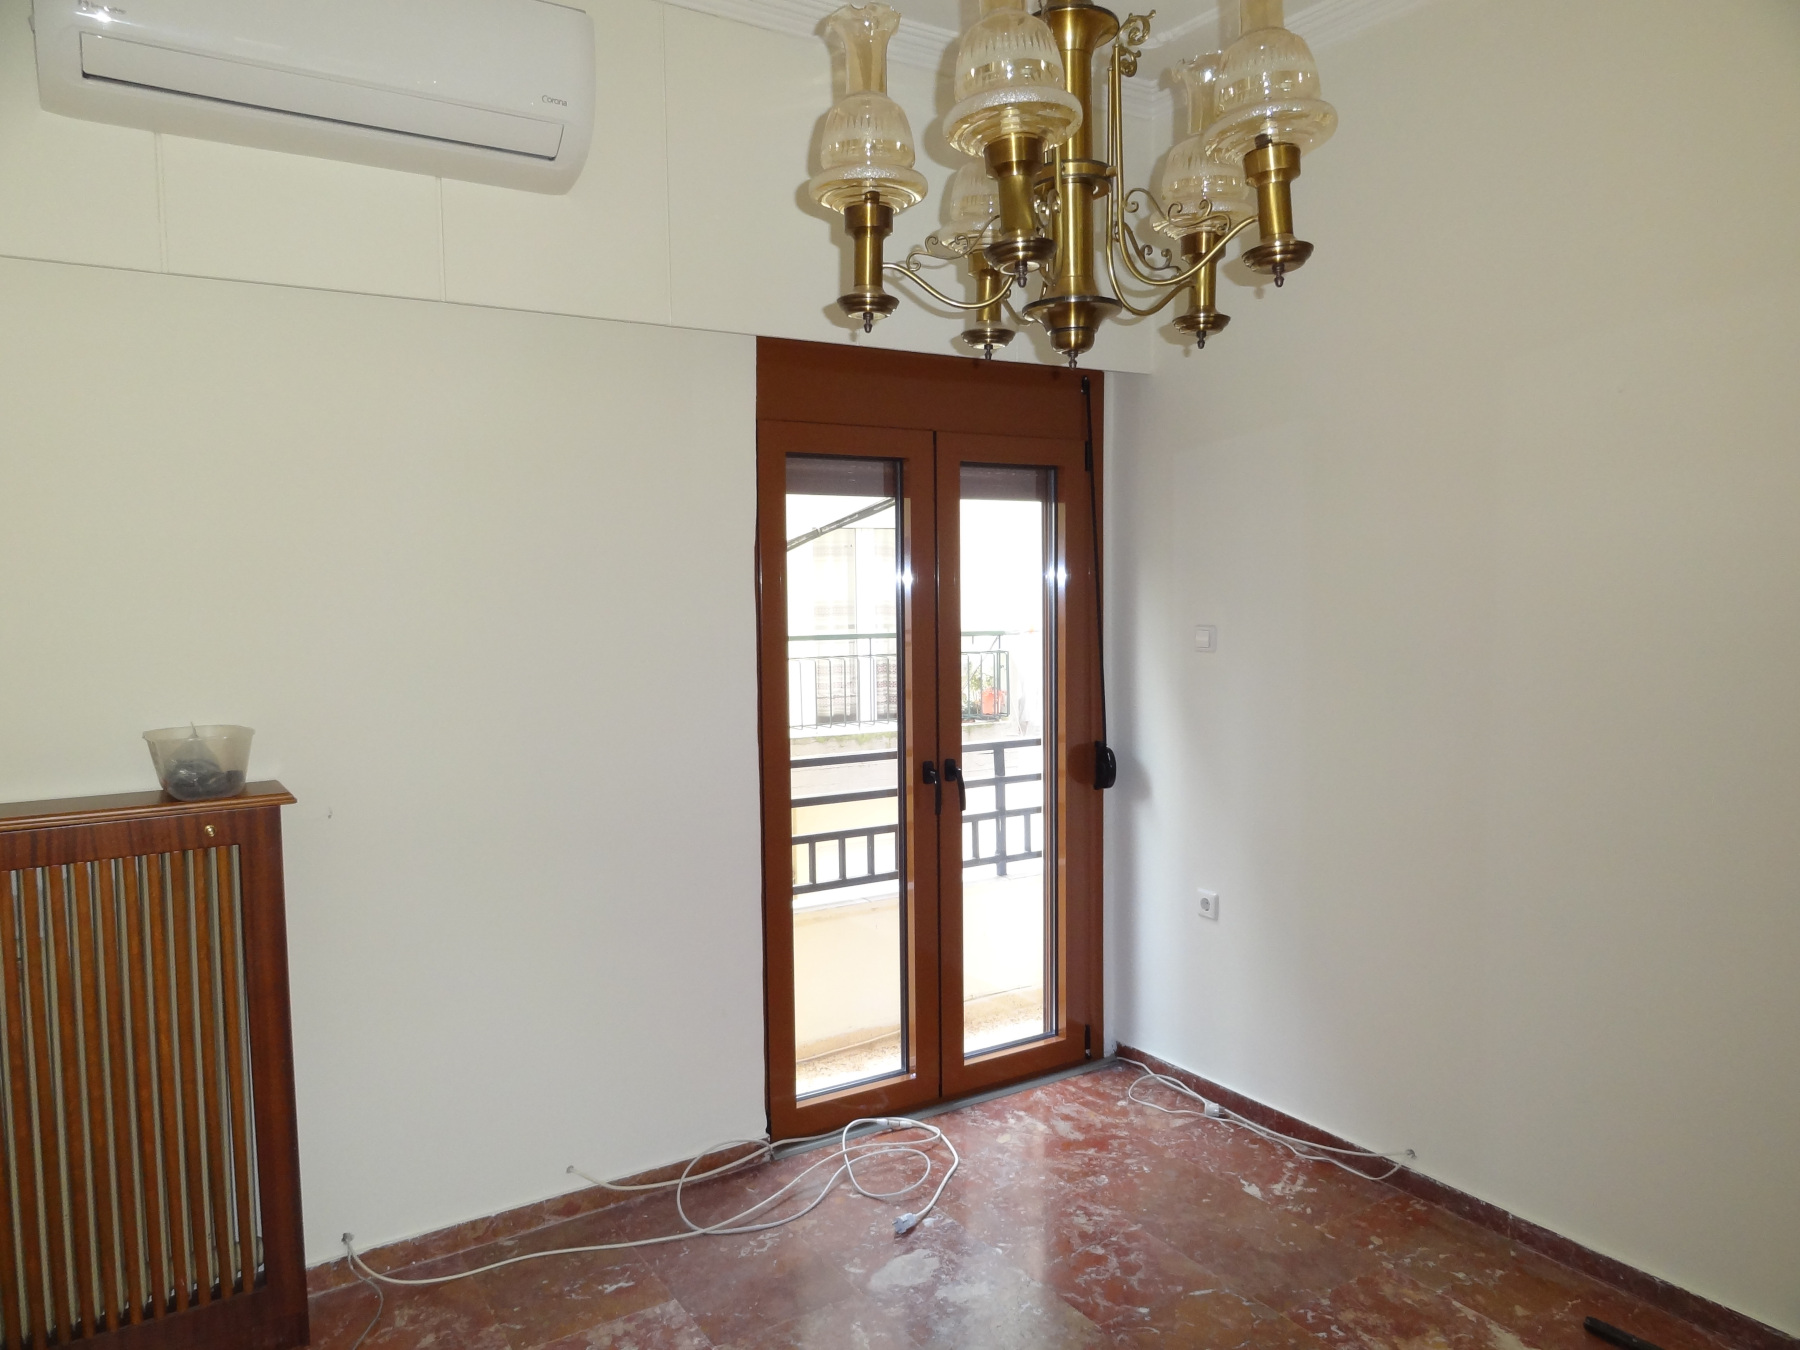 2 bedrooms apartment for rent, 67 sq.m. 2nd floor in the area of Karavatia in Ioannina